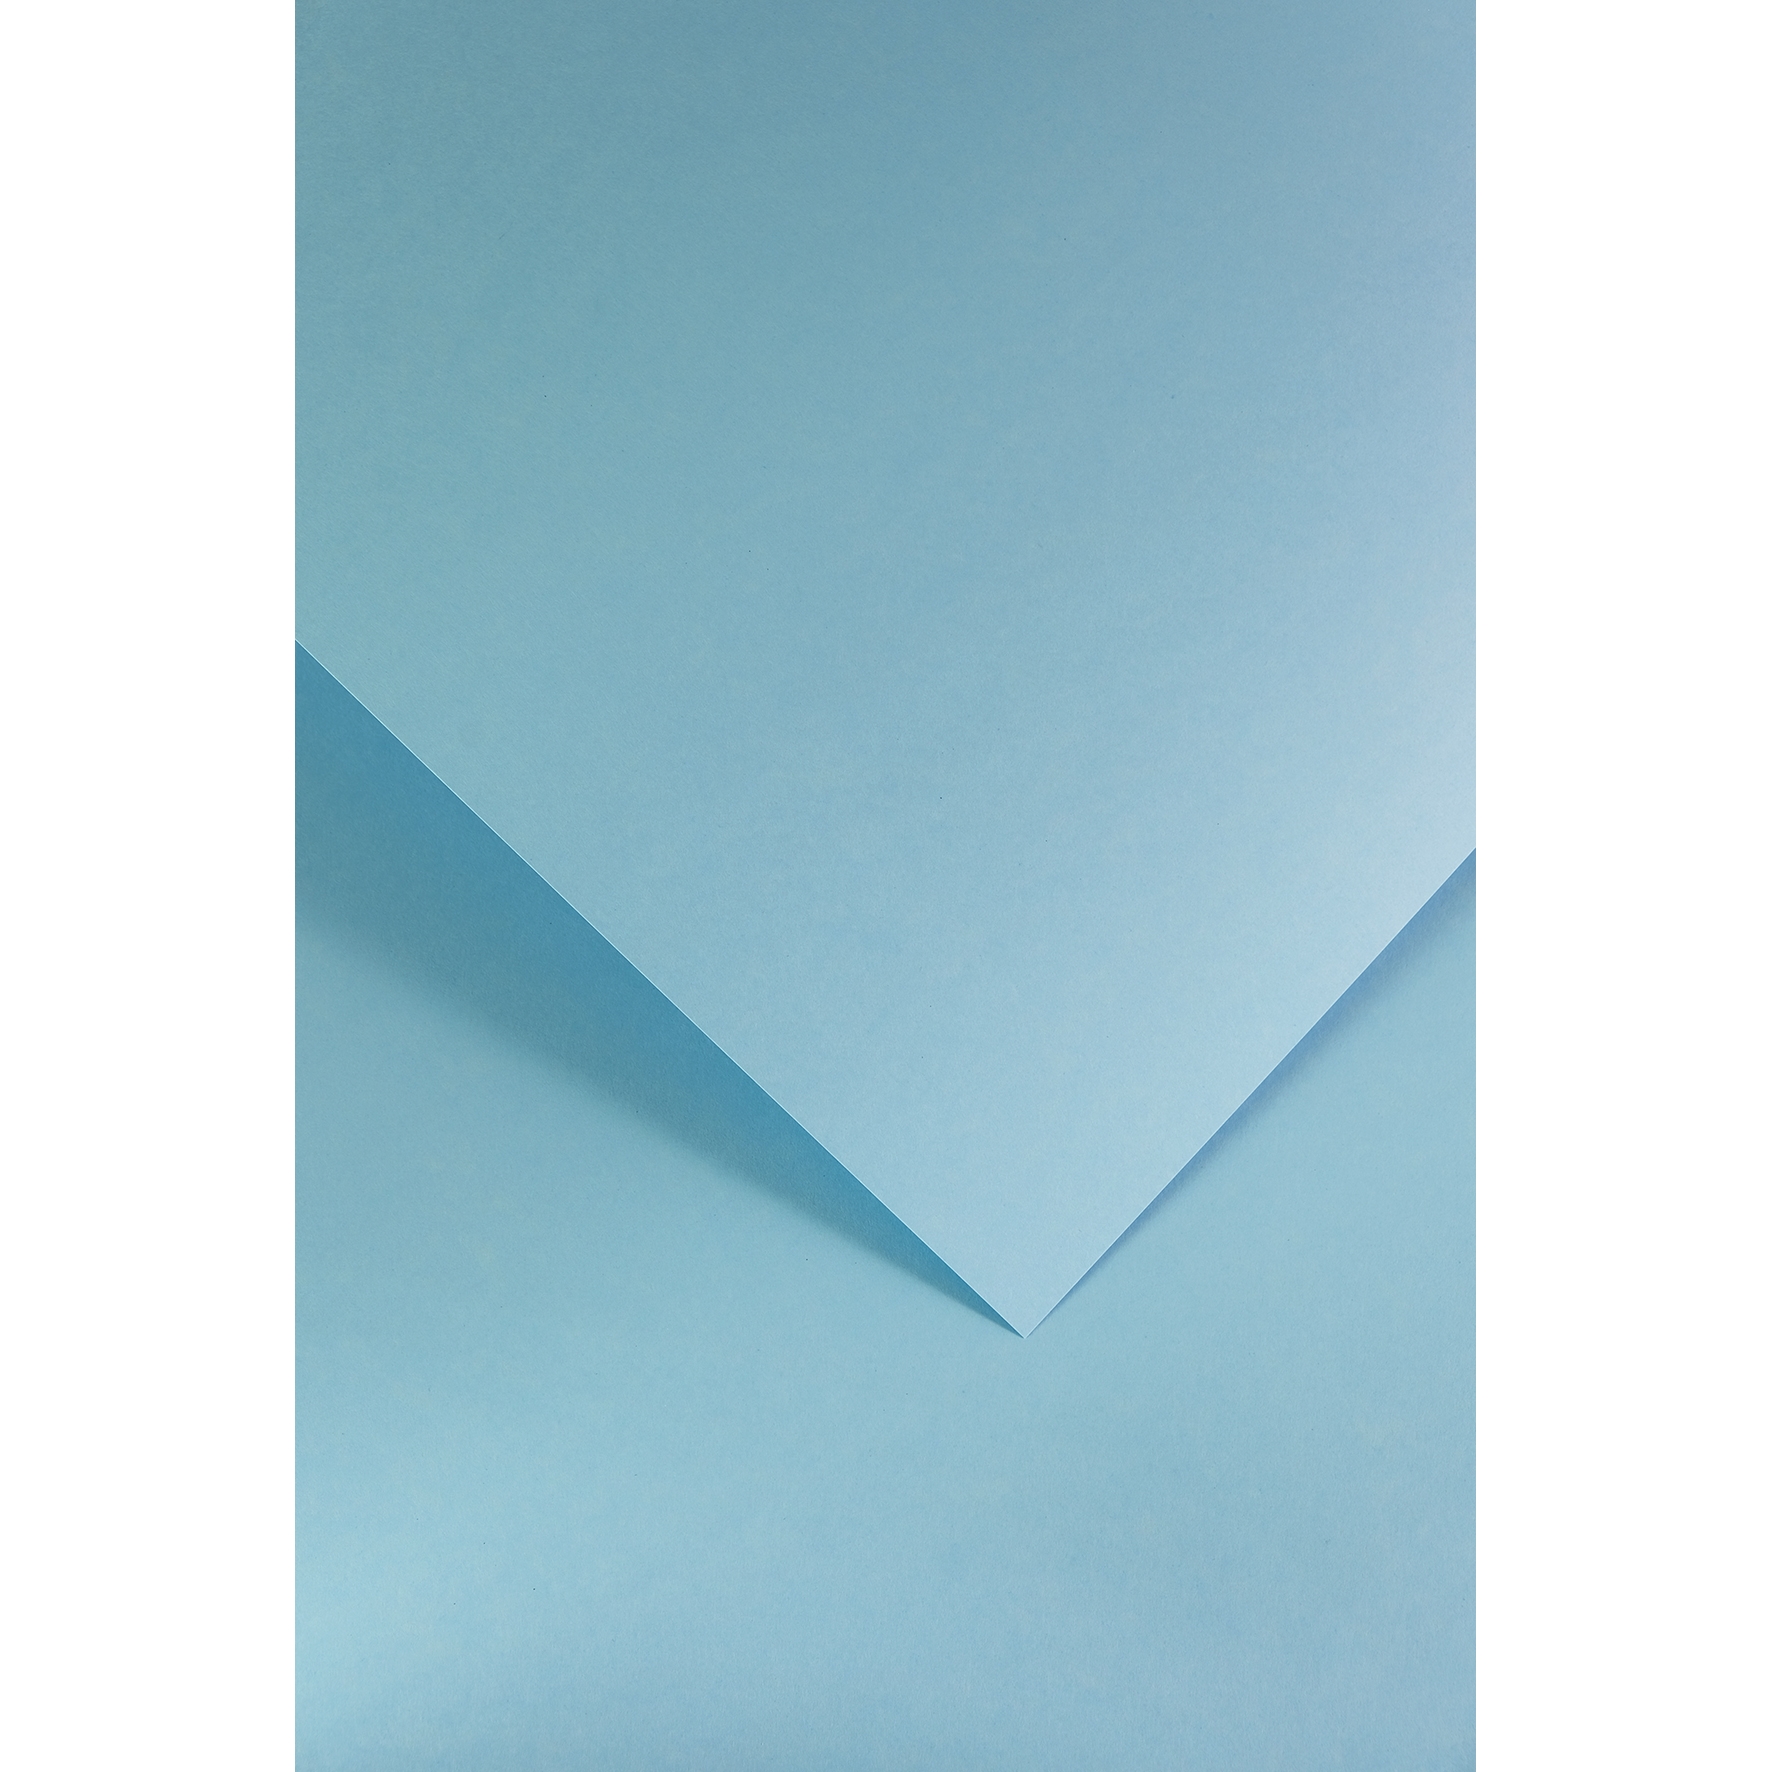 Ozdobný papír Hladký modrá 210g, 20ks